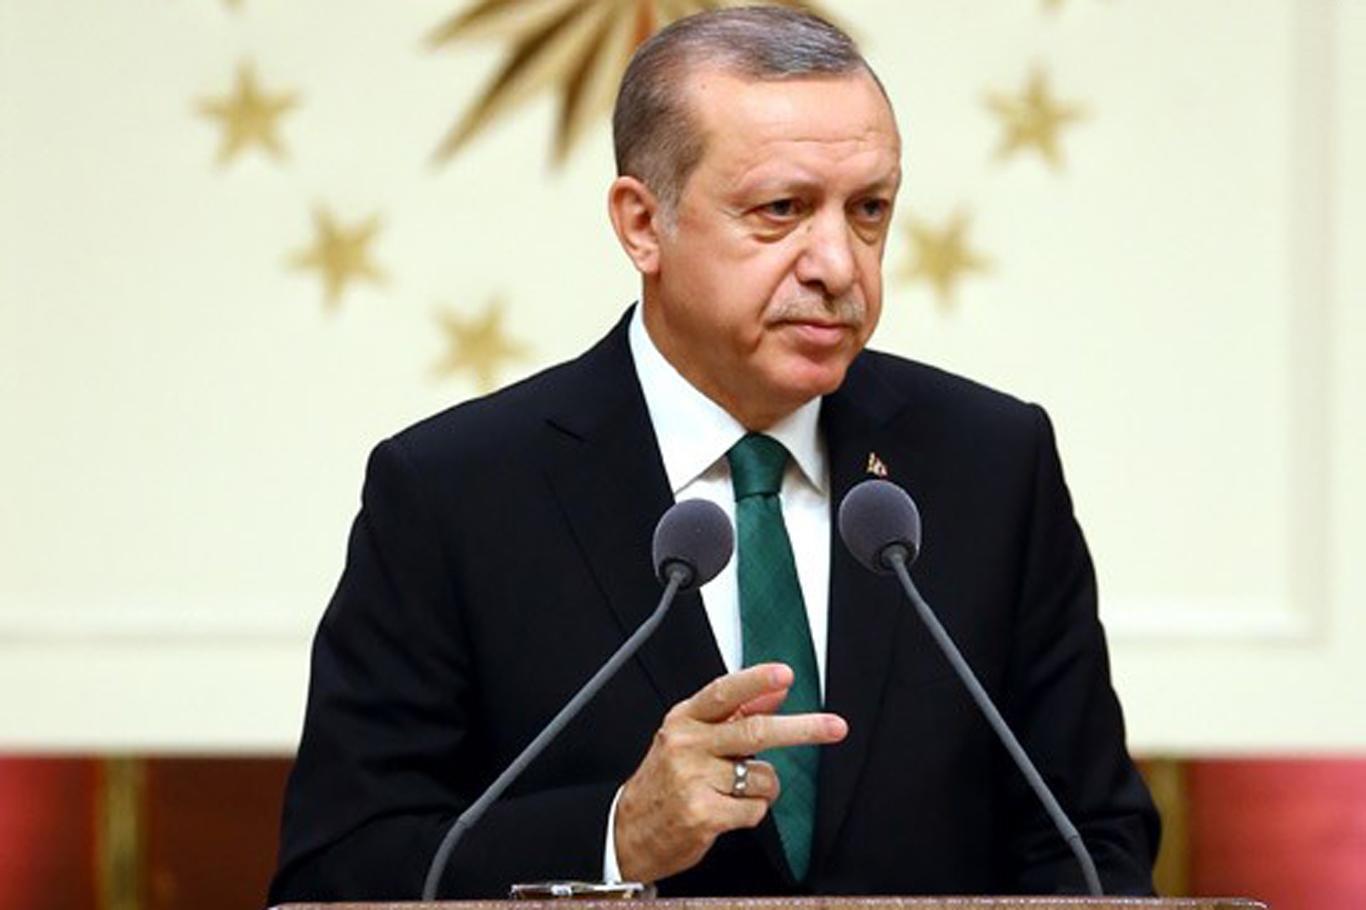 Erdoğan'dan Kılıçdaroğlu'na saldırıya ilişkin açıklama